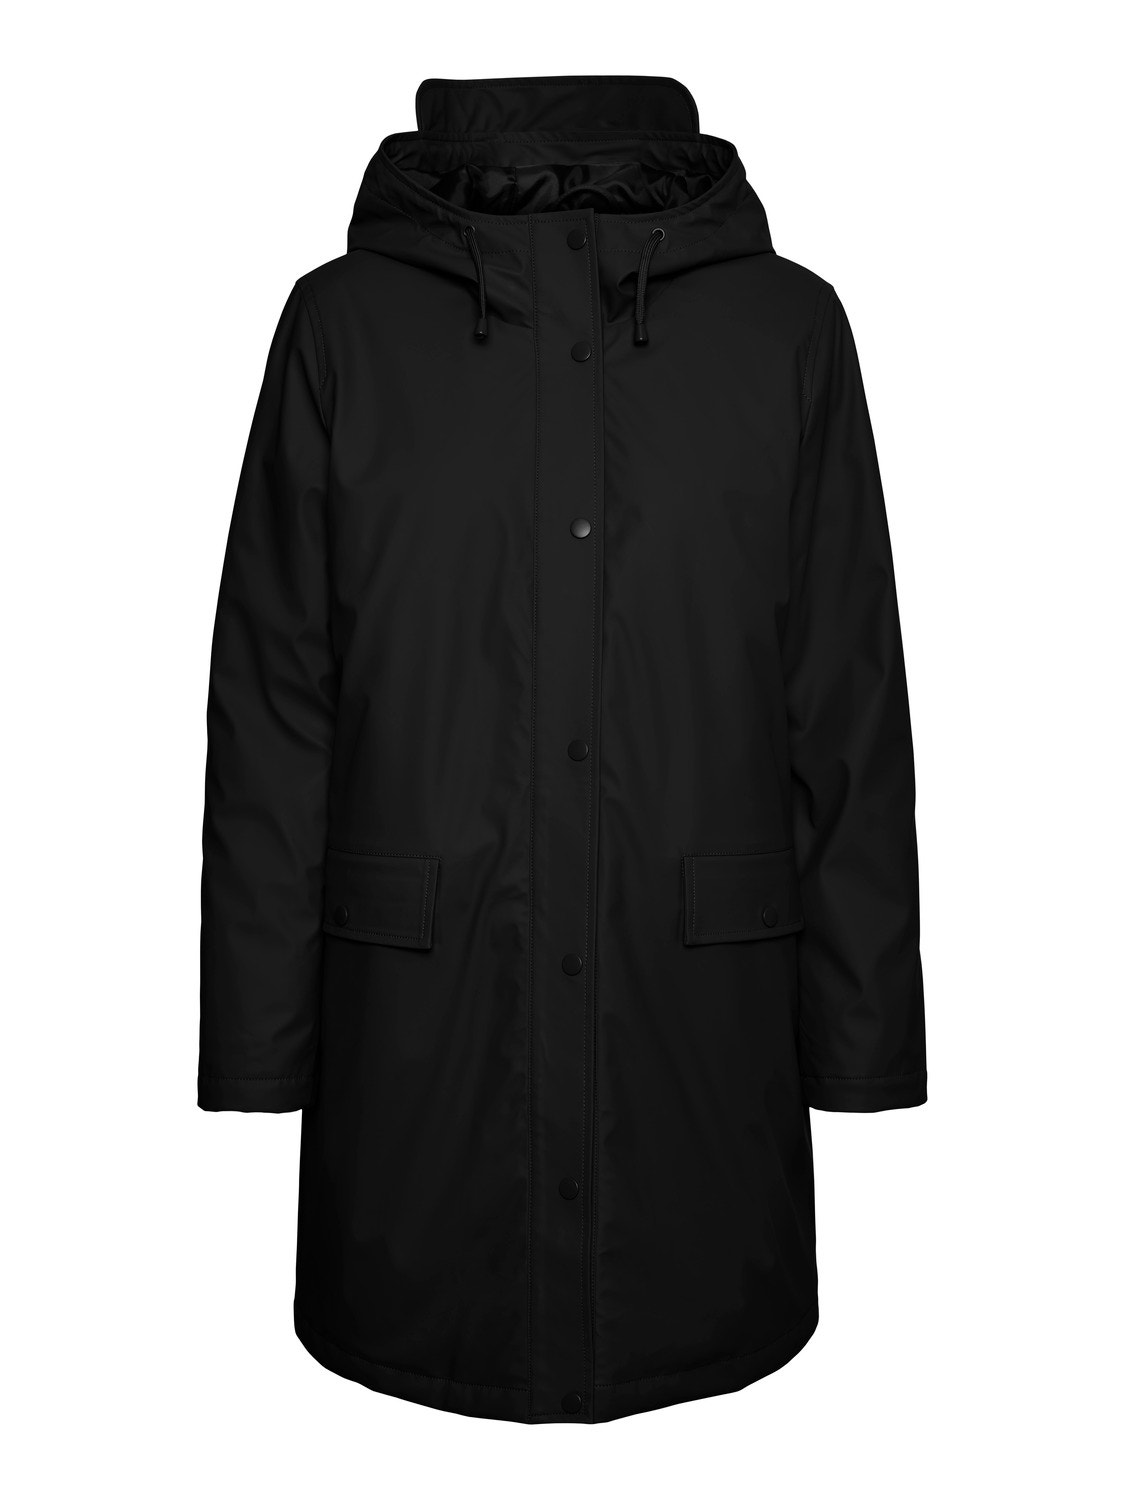 Vero Moda VMASTA Raincoat -Black - 10257578